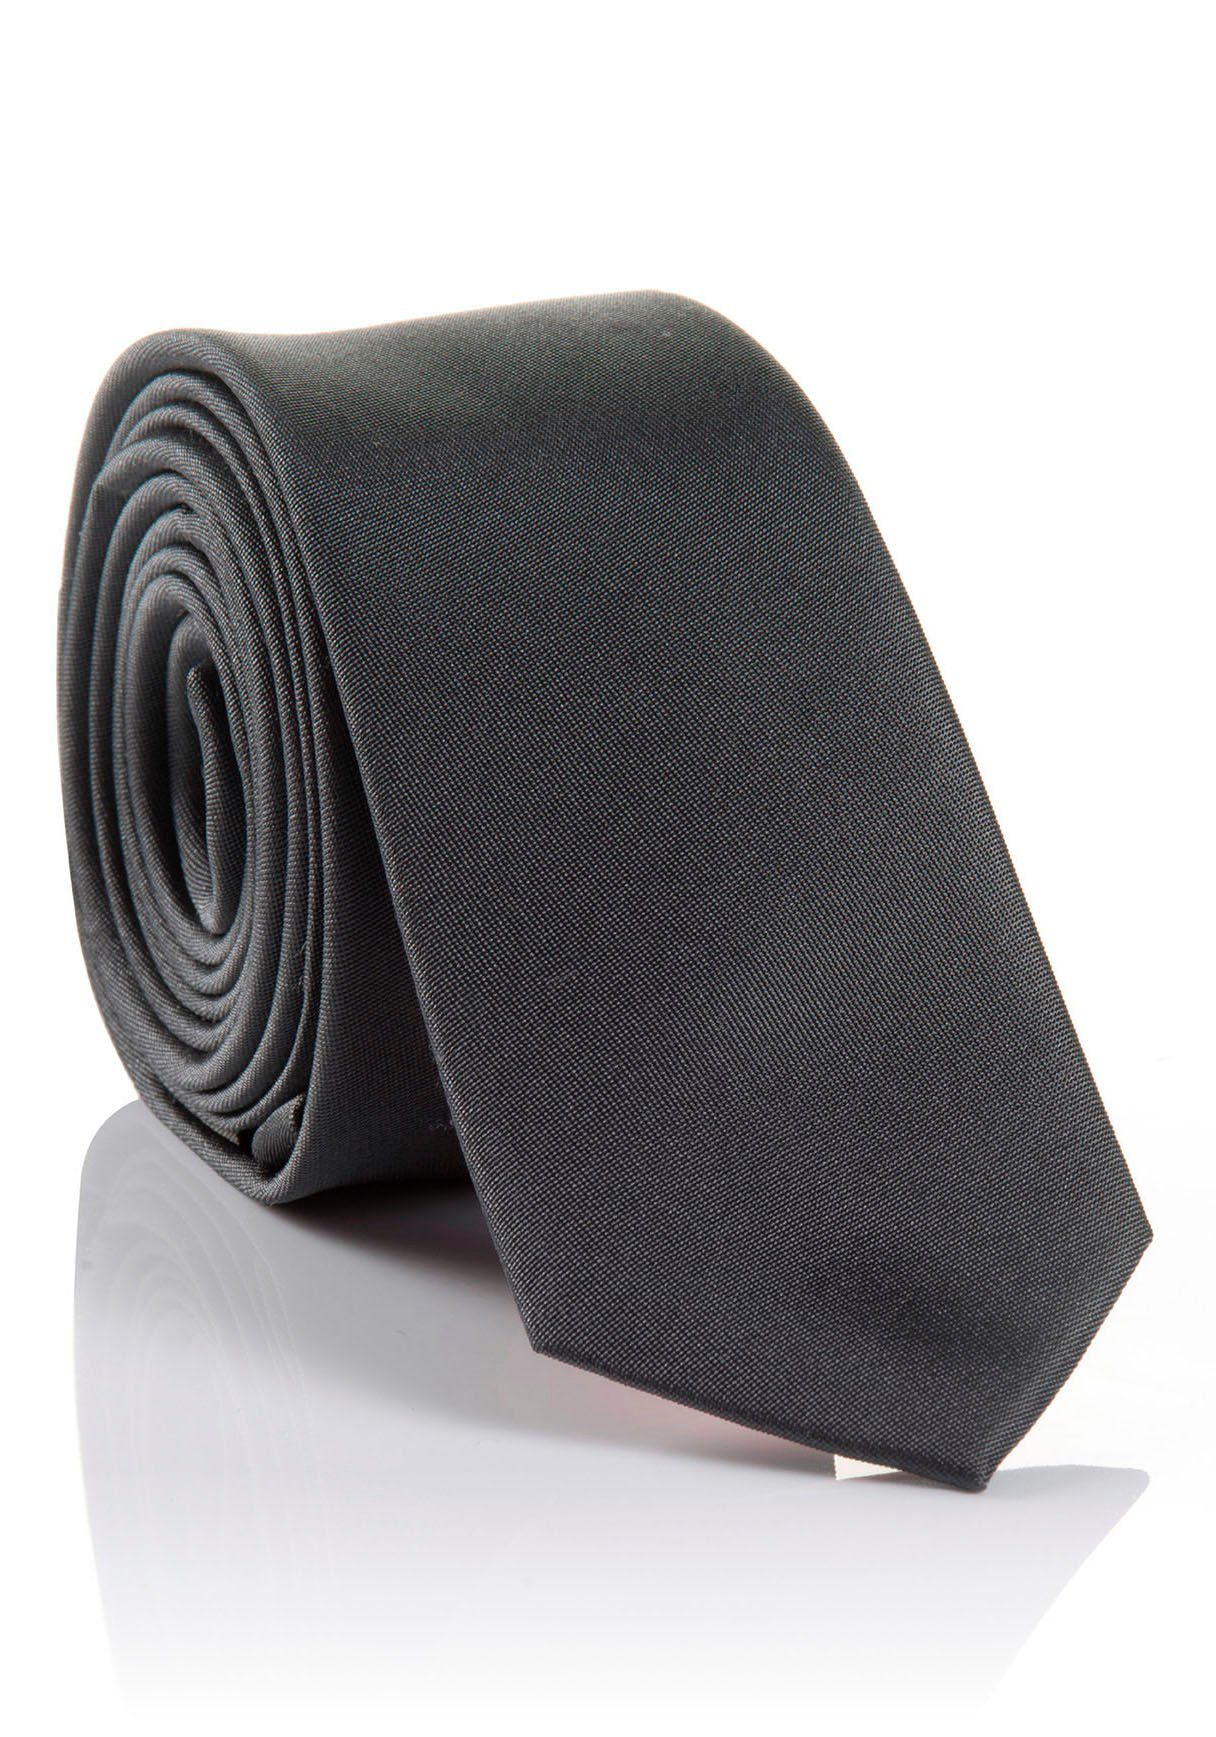 MONTI Krawatte LORENZO hohem Seidenkrawatte Tragekomfort Hochwertig mit verarbeitete grey